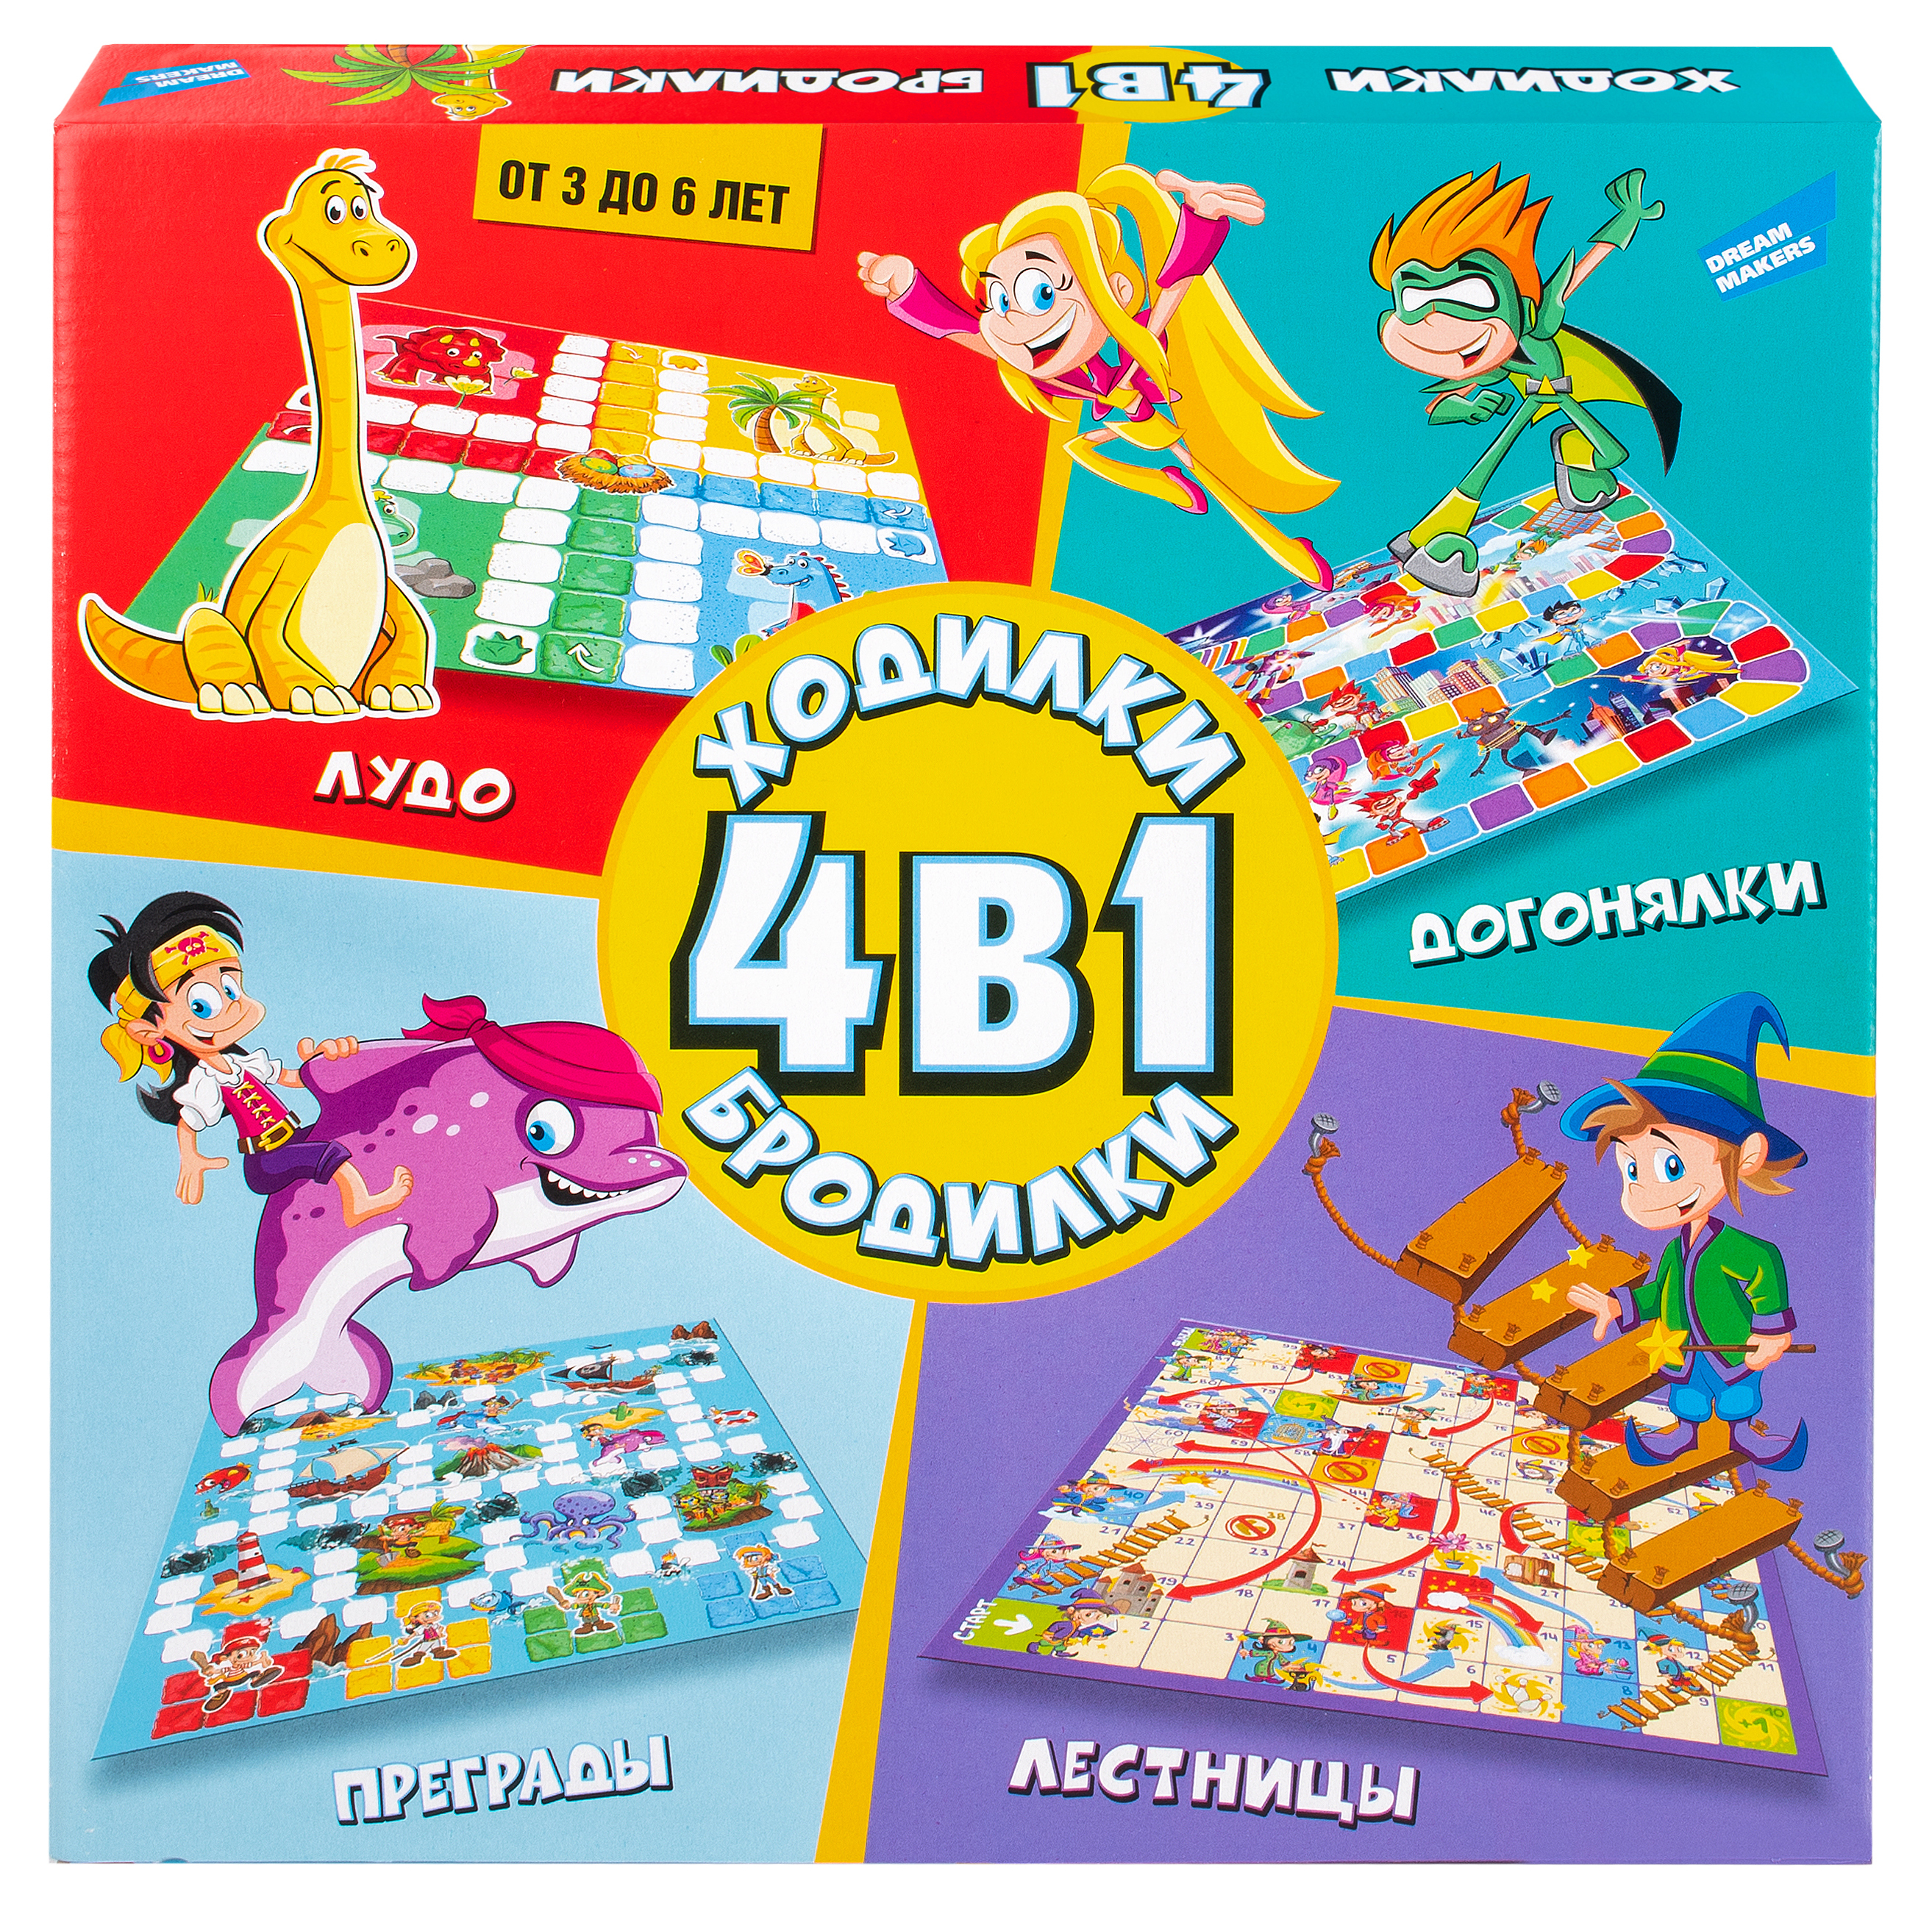 Настольные игры для детей лет - купить самые популярные игры на натяжныепотолкибрянск.рф